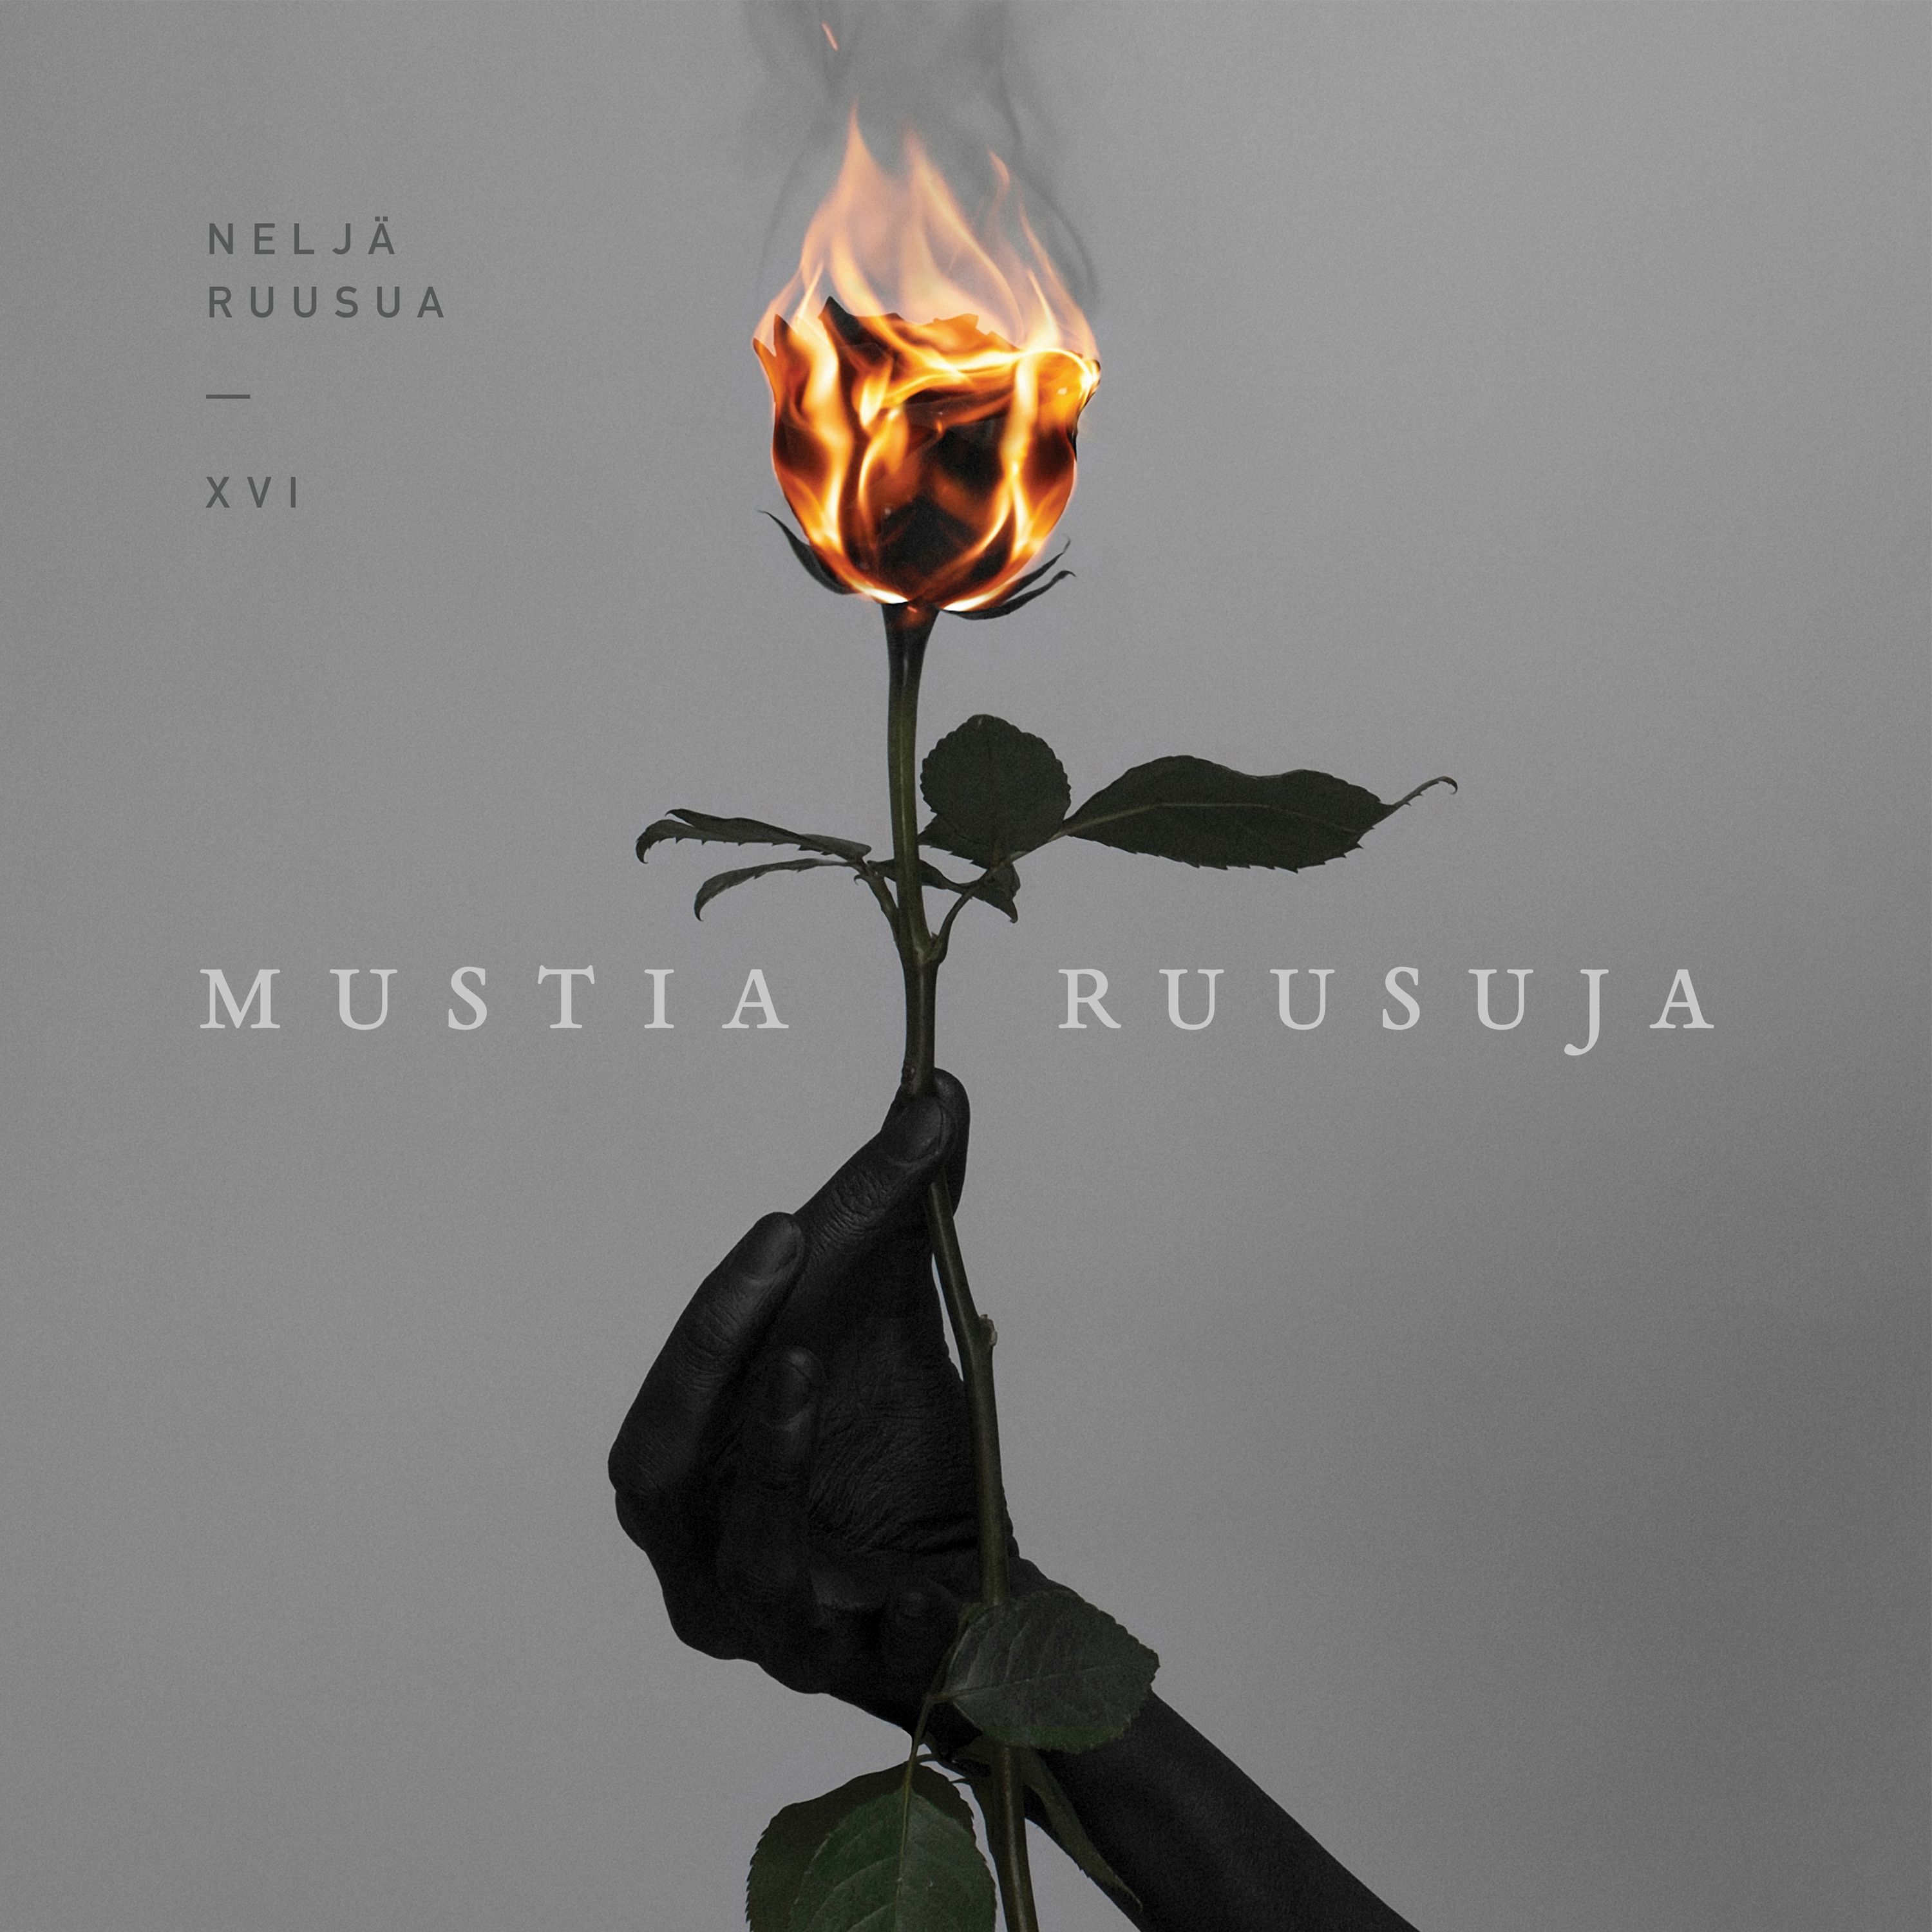 35-vuotias Neljä Ruusua julkaisee 15. albuminsa ”MUSTIA RUUSUJA” 8.  kesäkuuta - Piikkikasvi & Sahara